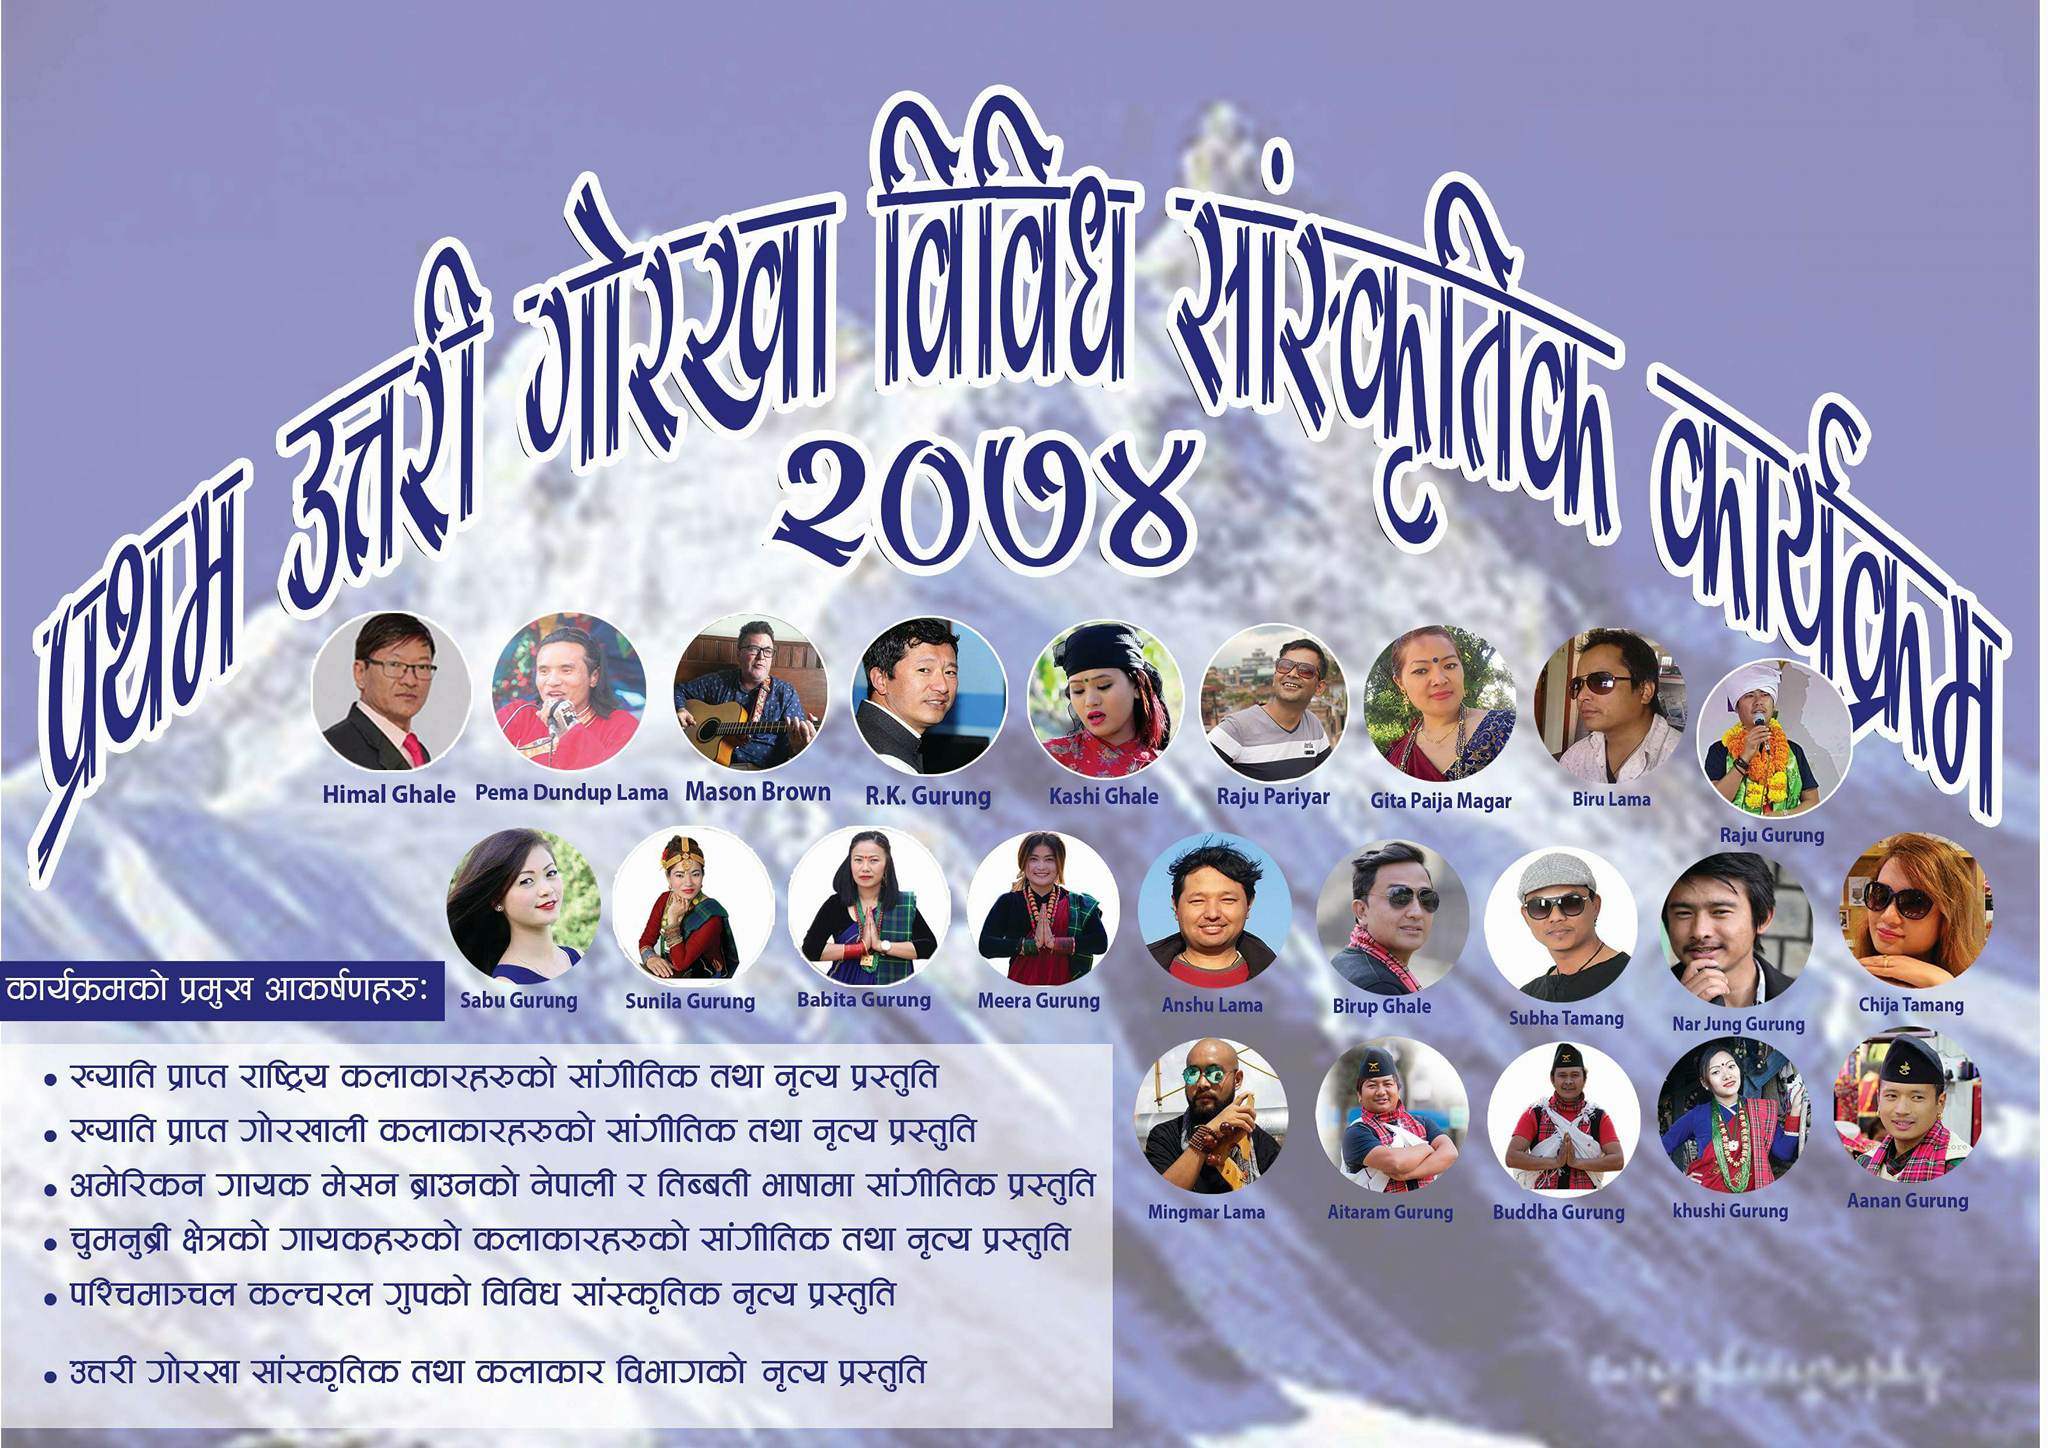 काठमाडौँमा उत्तरी क्षेत्रका गोर्खालीहरुको सक्रियतामा ”प्रथम उत्तरी गोर्खा सास्कृतिक कार्यक्रम ”आयोजना हुने |